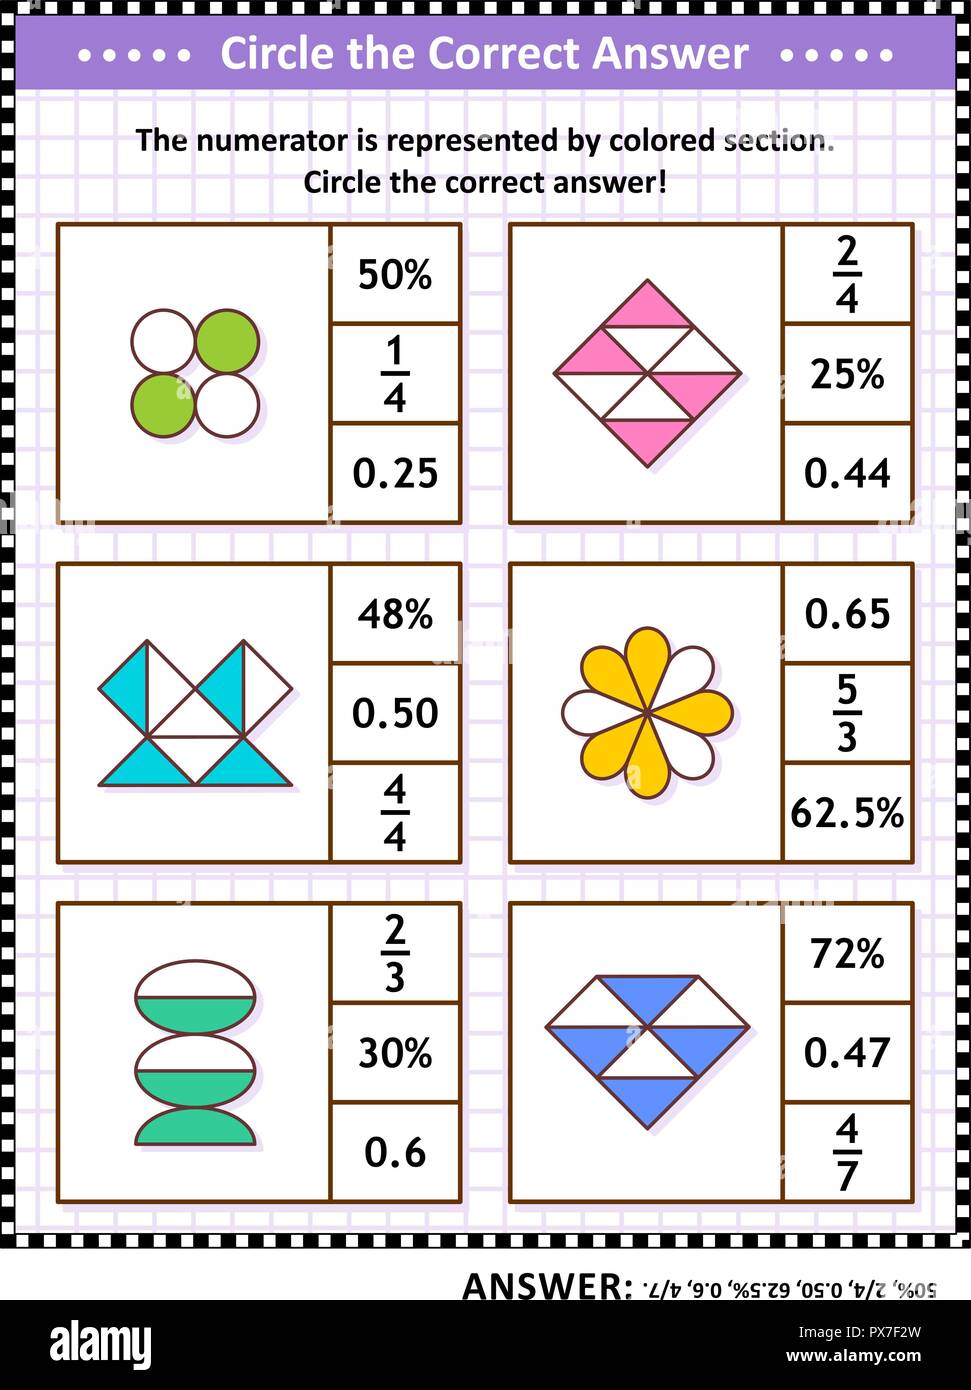 Mathematische Fähigkeiten Schulung visual Puzzle. Einen Kreis um die richtige Antwort. Suchen Sie die entsprechende Anzahl für jede bildliche Bruchteil Darstellung. Antwort enthalten. Stock Vektor